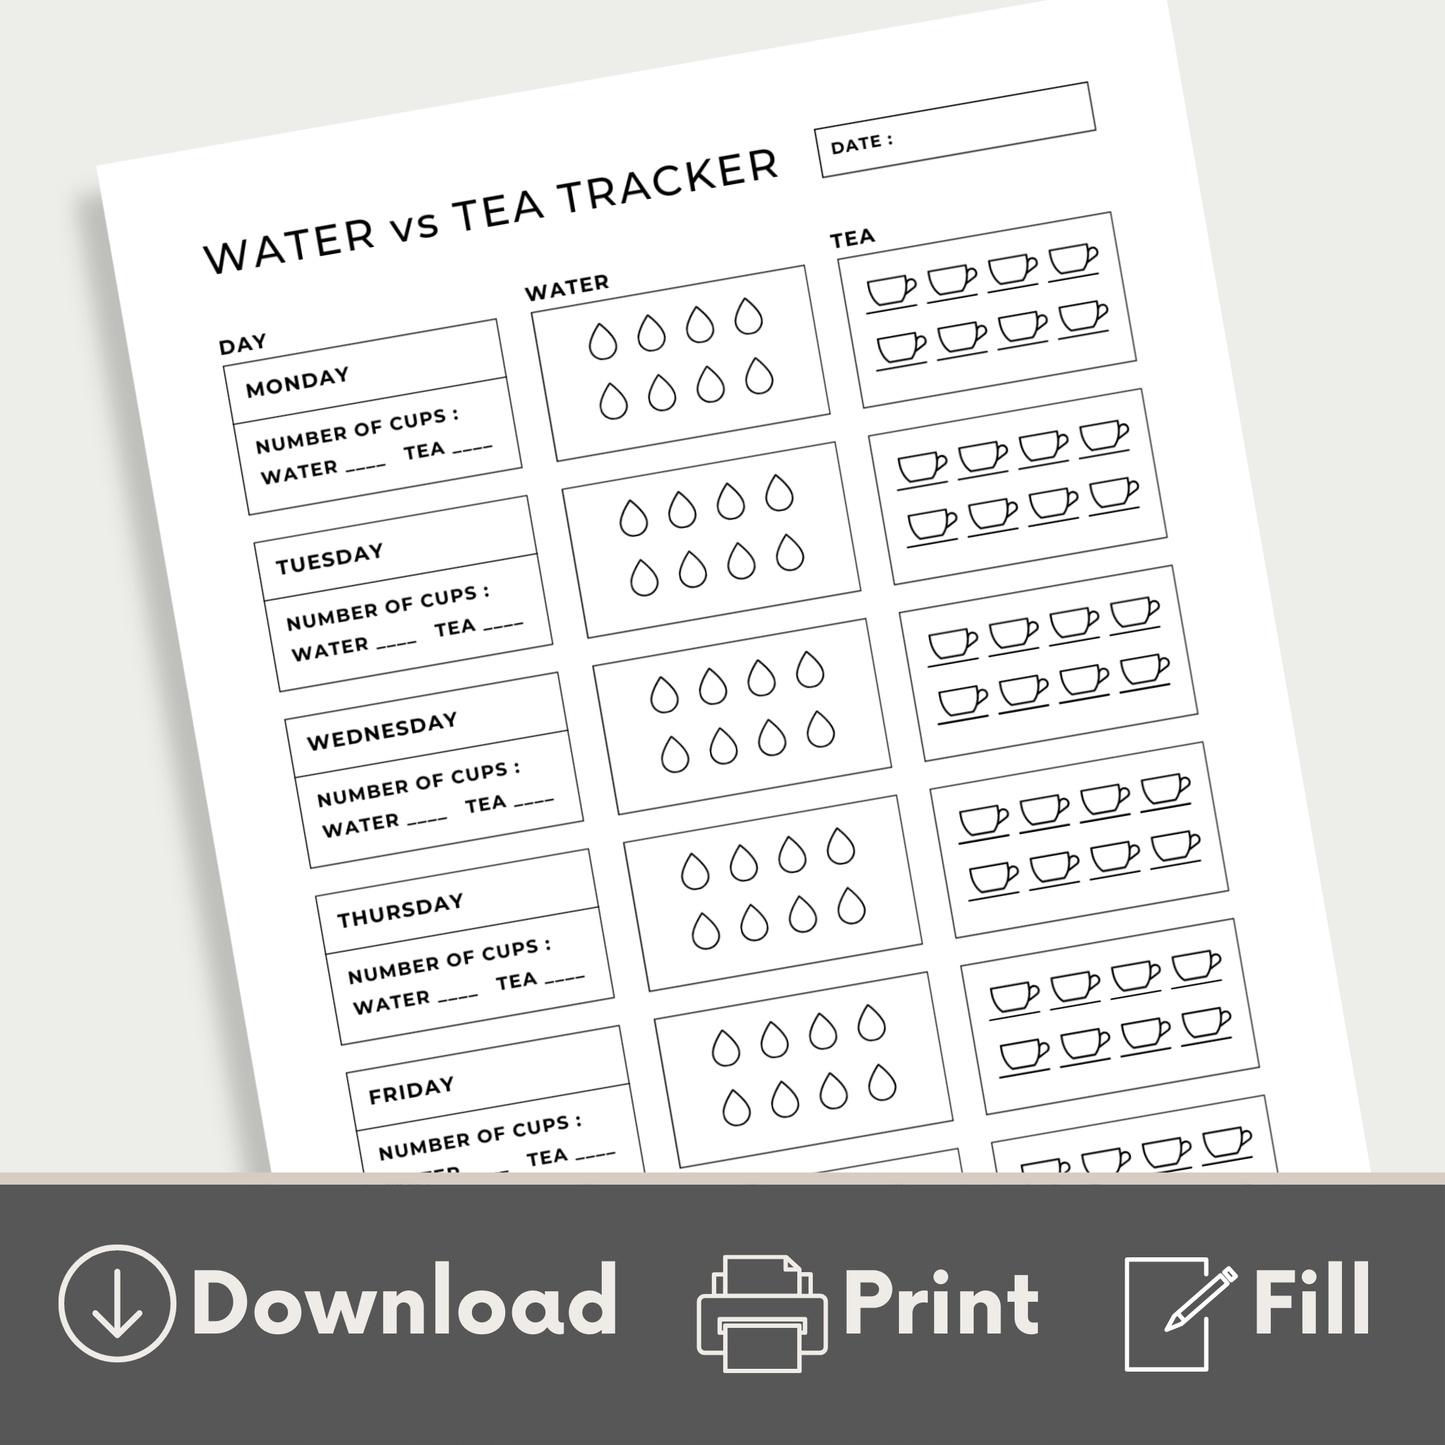 Water Vs Tea Tracker